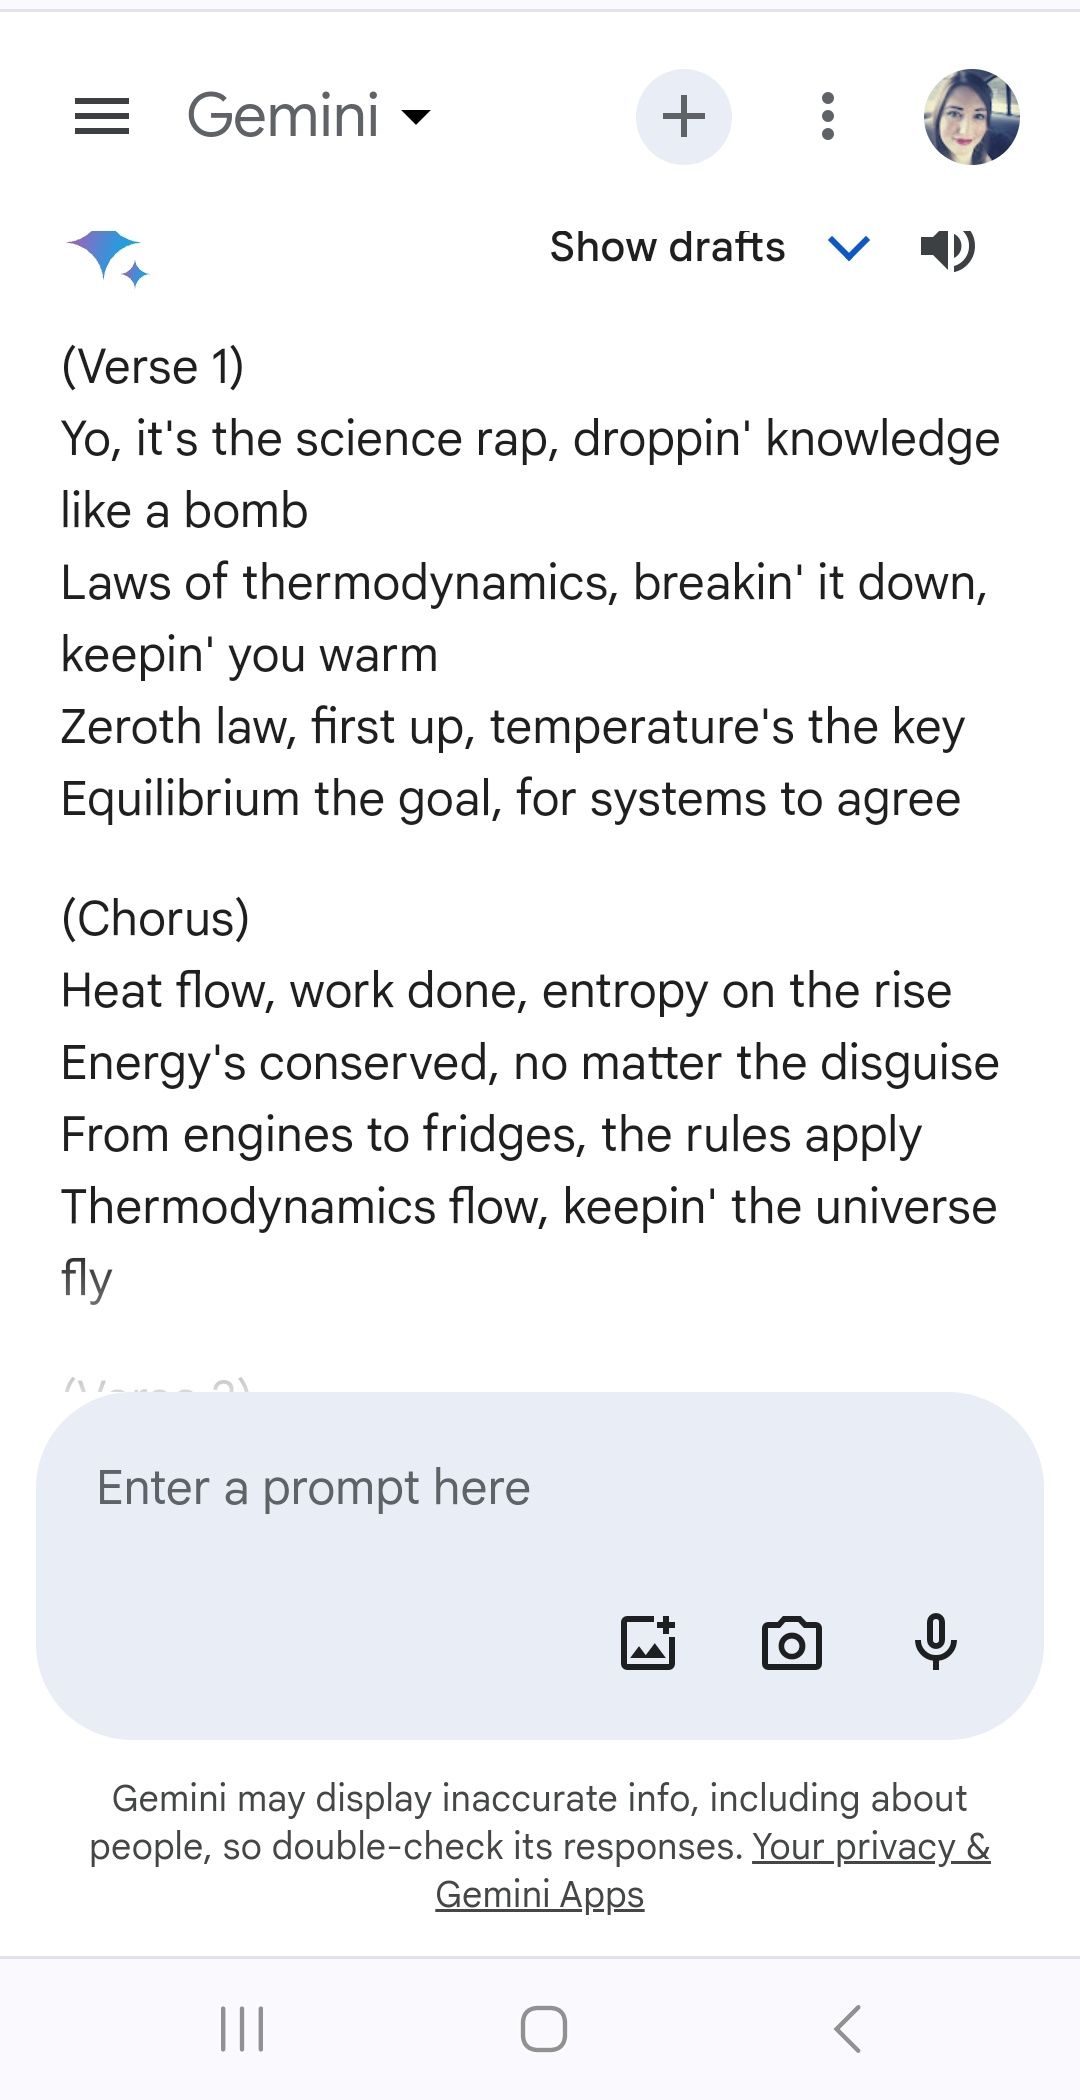 resposta da música rap do Google Gemini contendo todas as leis da termodinâmica